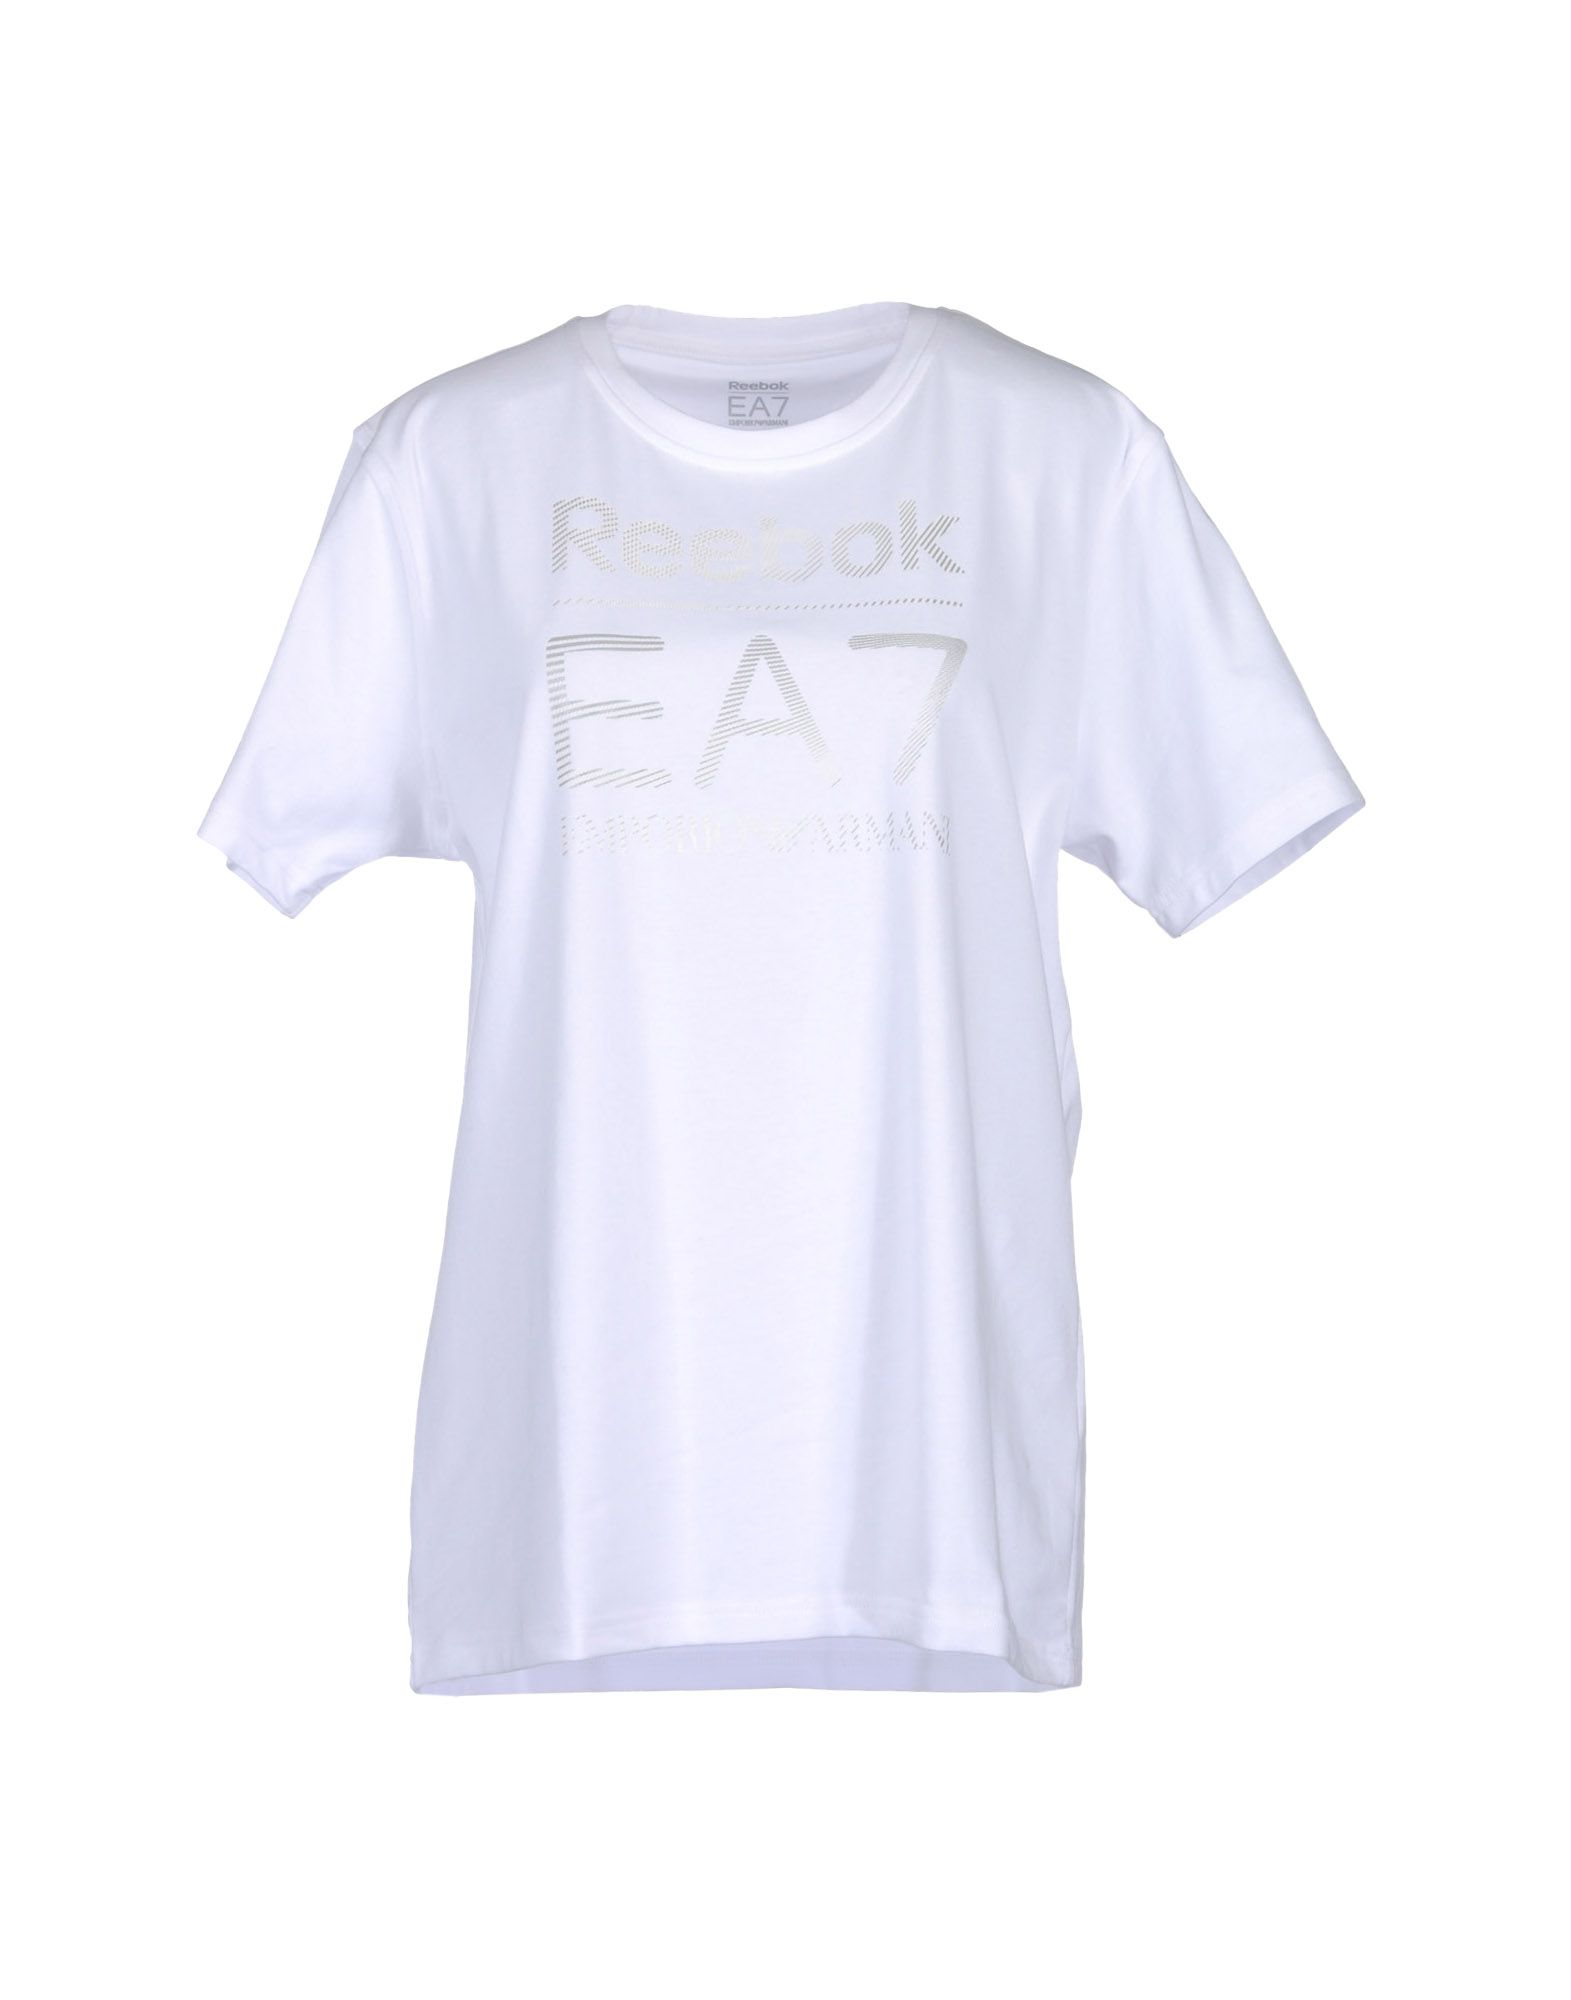 Foto ea7 reebok camisetas de manga corta
